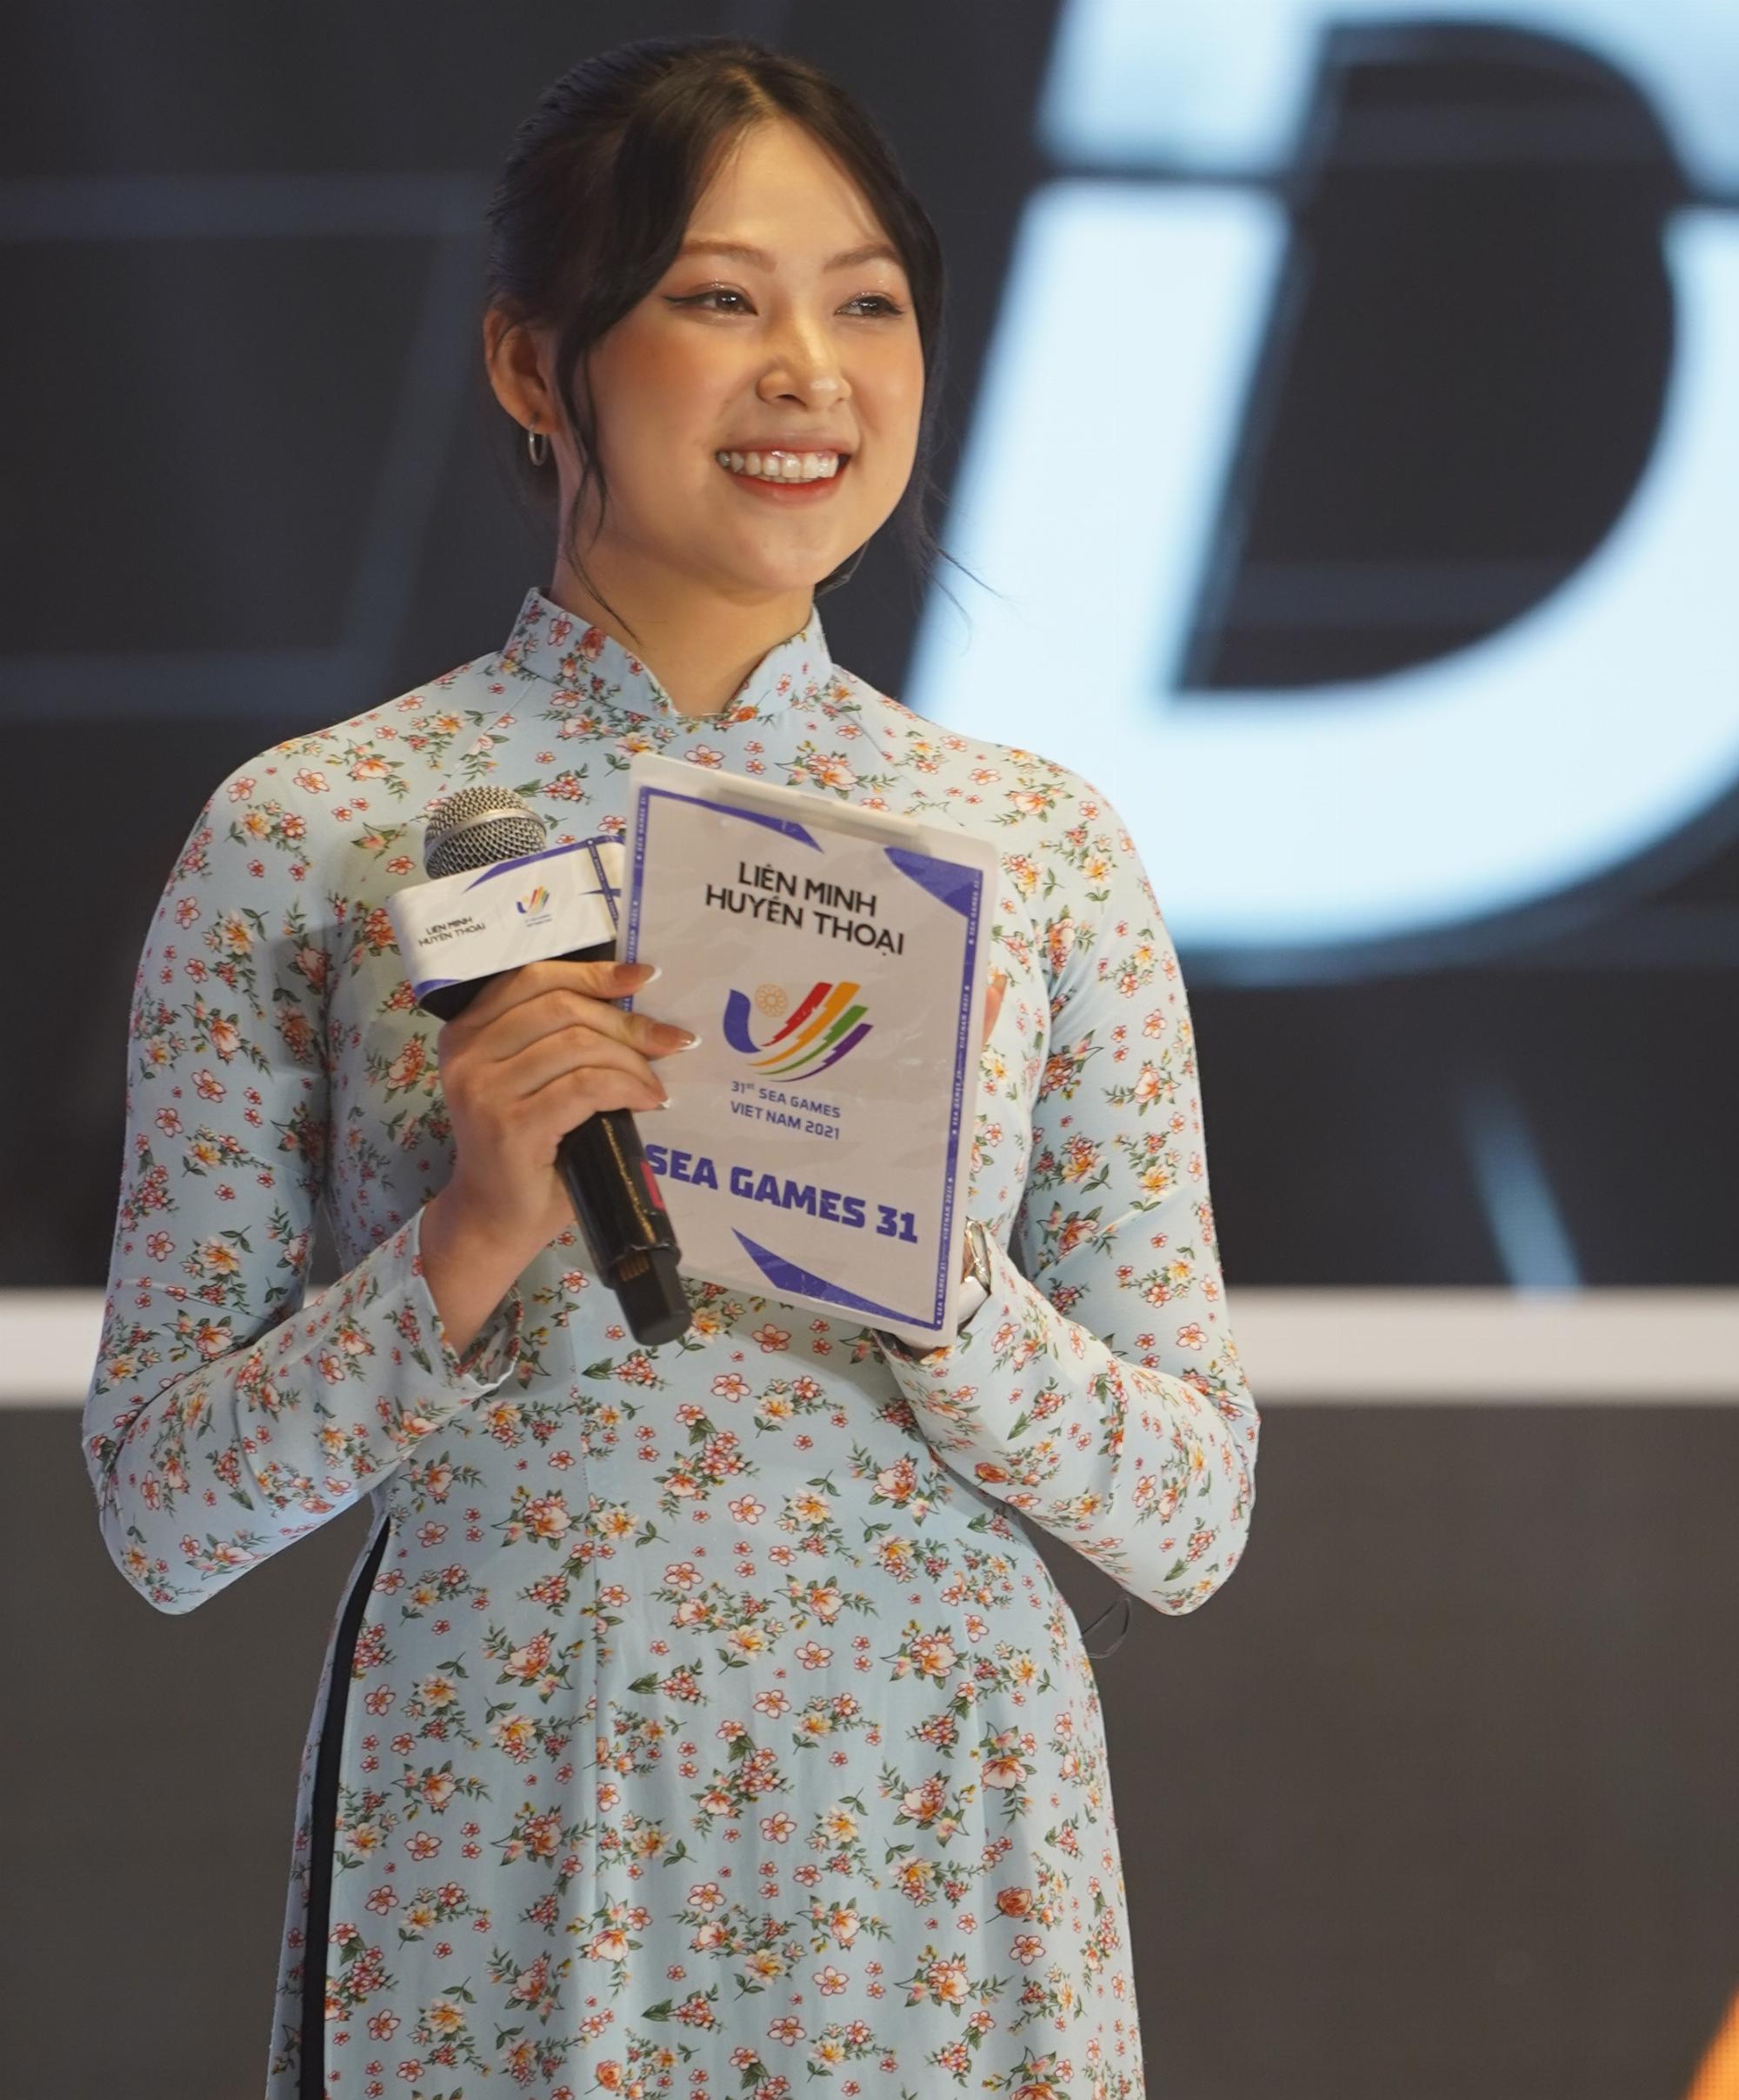 Biến SEA Games 31 thành ‘đại hội áo dài’, dàn nữ MC eSports nước chủ nhà xinh đẹp rạng ngời trong từng khoảnh khắc